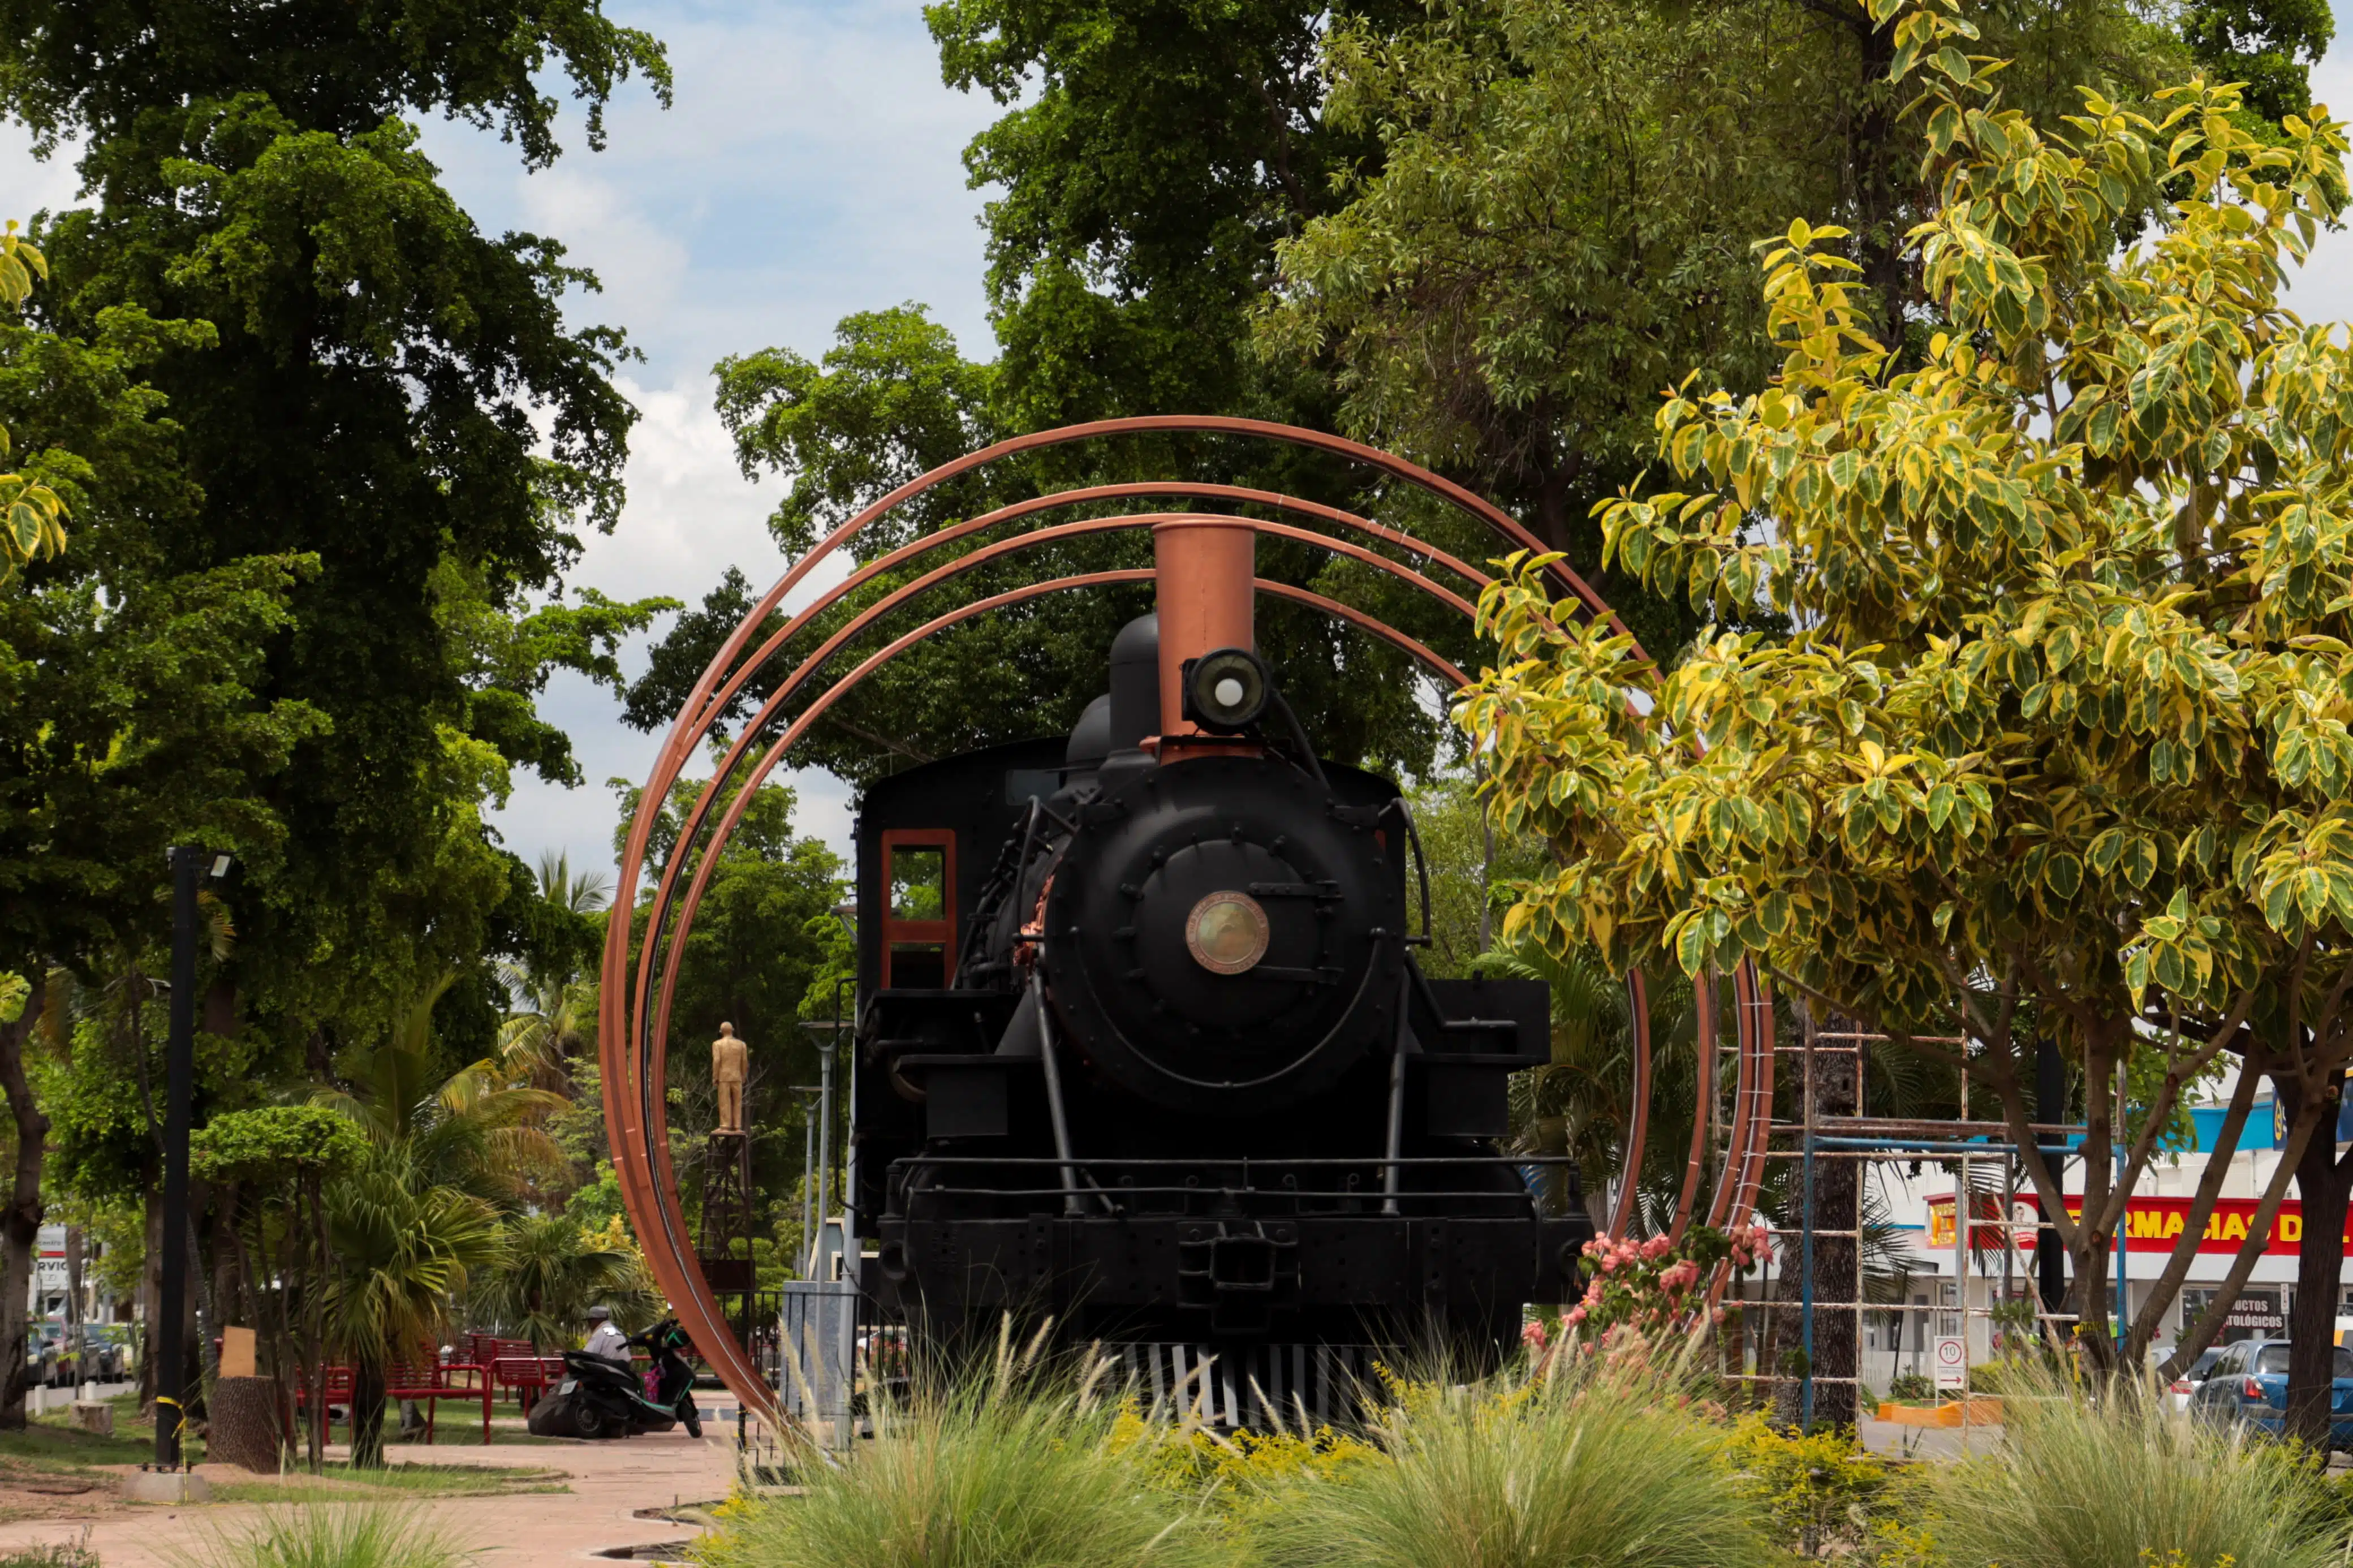 La locomotora remonta a la época revolucionaria cuando el tren corría por la entonces llamada avenida del Ferrocarril o calle De las Vías, donde estaba la antigua estación, ahora entre Degollado y Allende